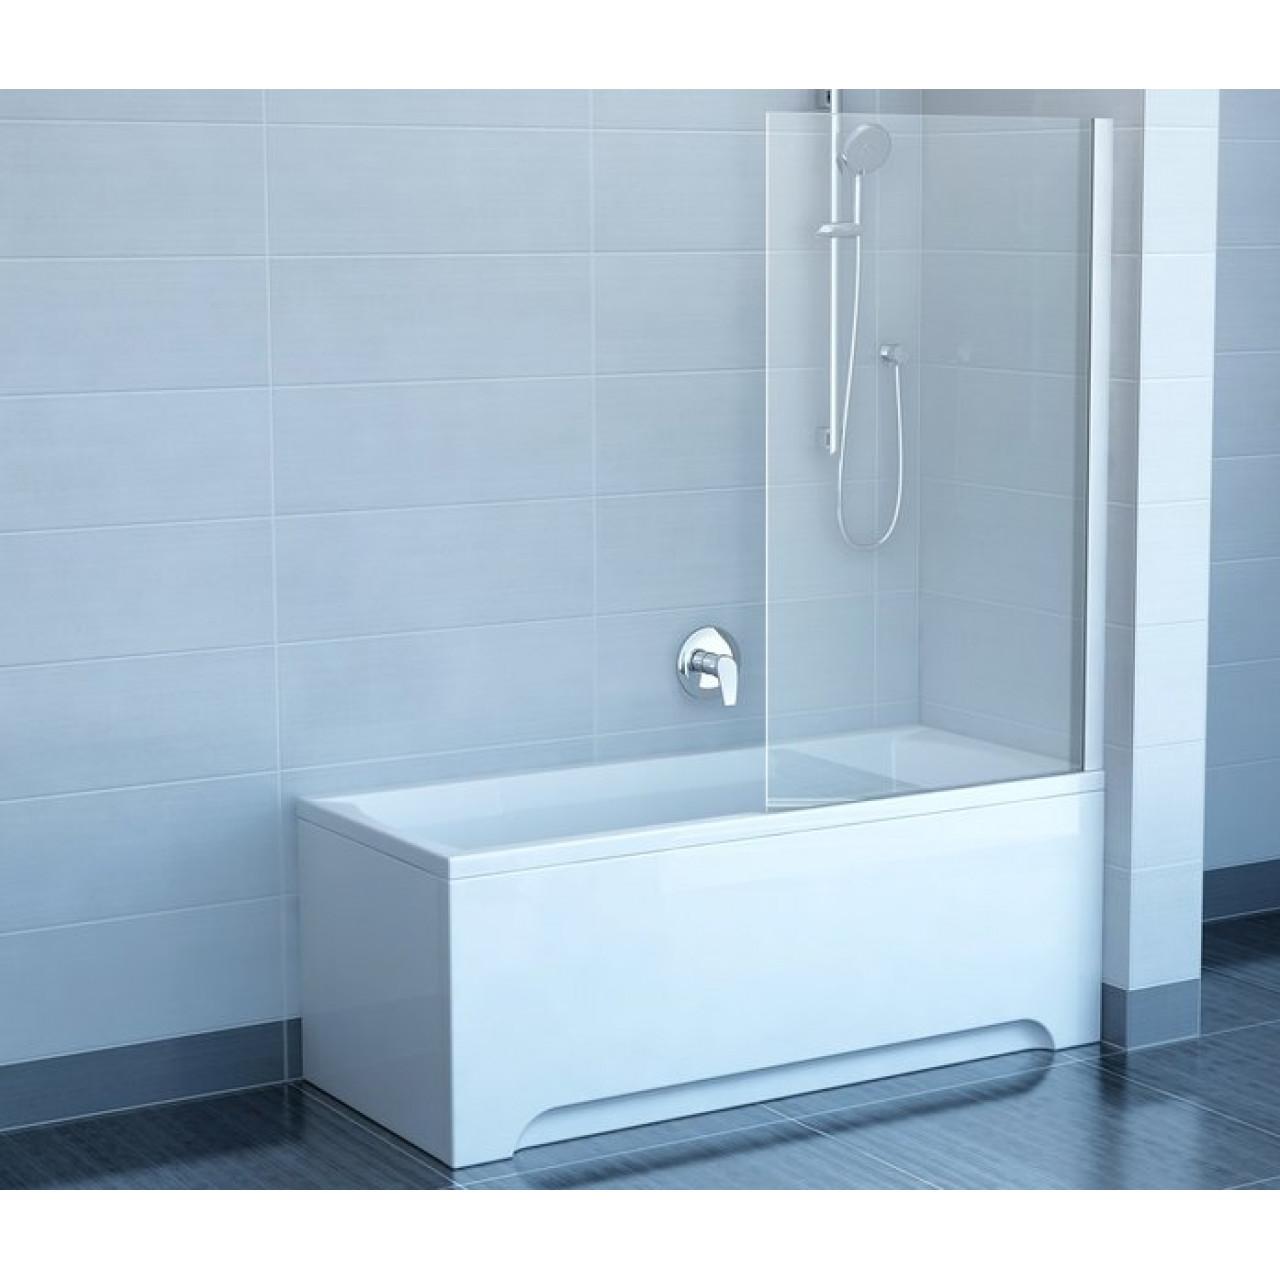 Шторка для ванны Ravak Chrome CVS1-80 R белый+ транспарент 7QR40100Z1 купить в Москве по цене от 29480р. в интернет-магазине mebel-v-vannu.ru